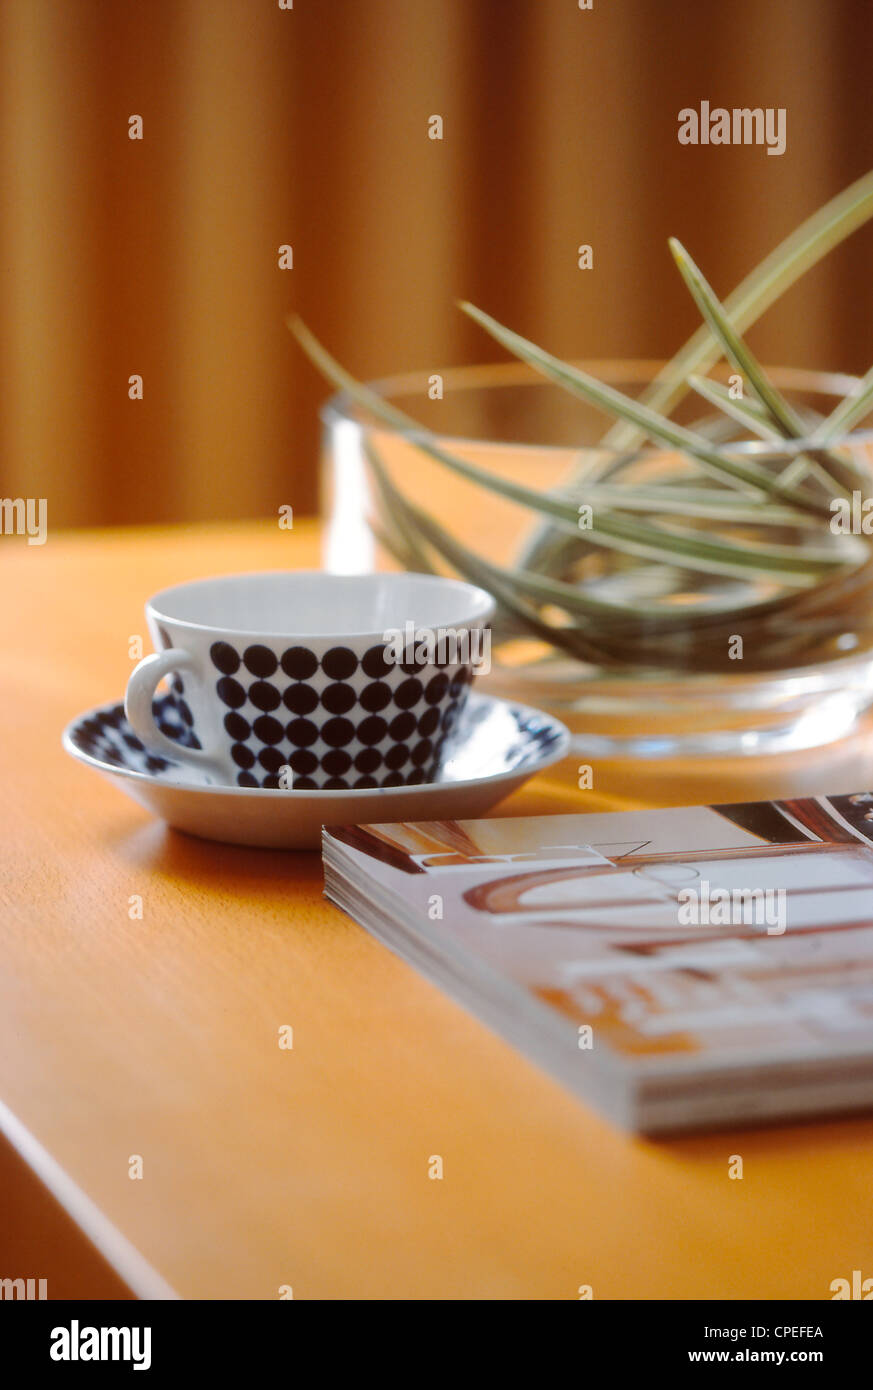 Vaso, Plato, tazón de vidrio y una revista en la mesa Foto de stock